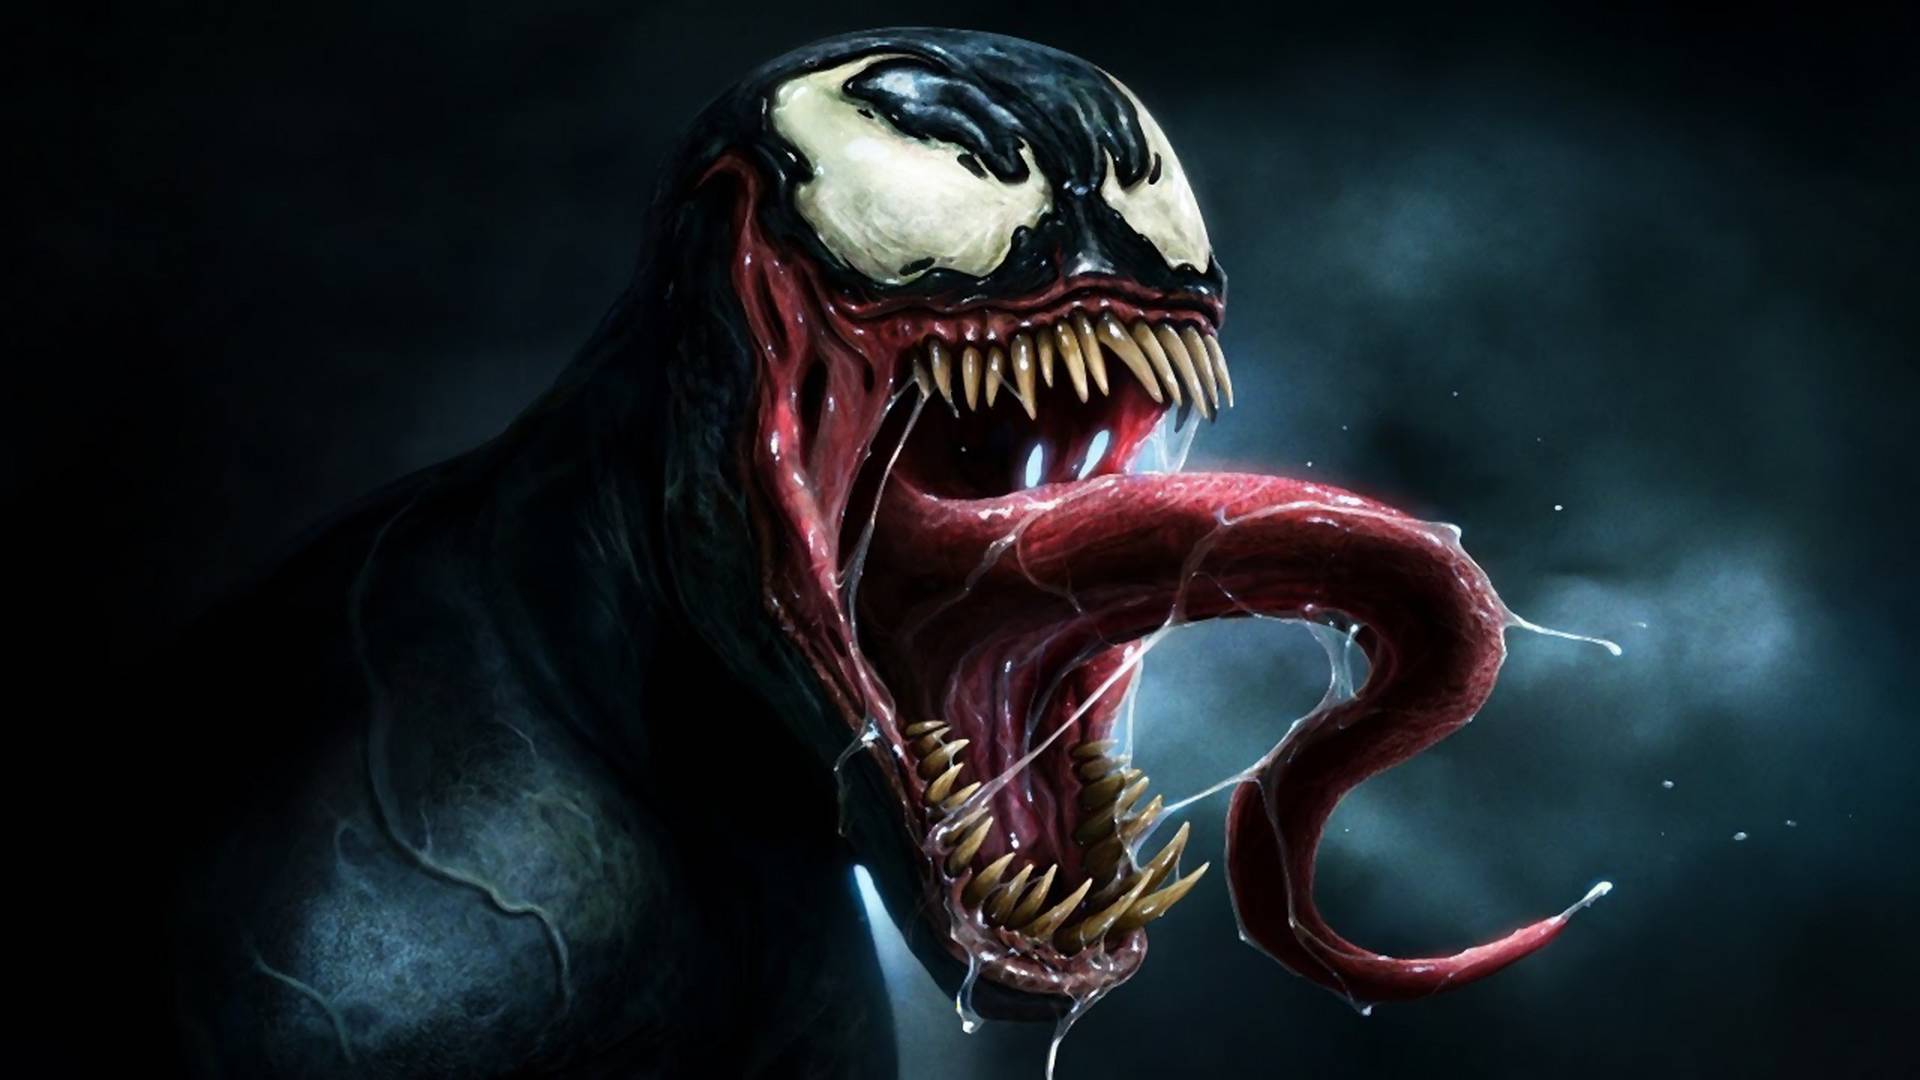 Kijött a hivatalos Venom poszter és beszarás jól néz ki